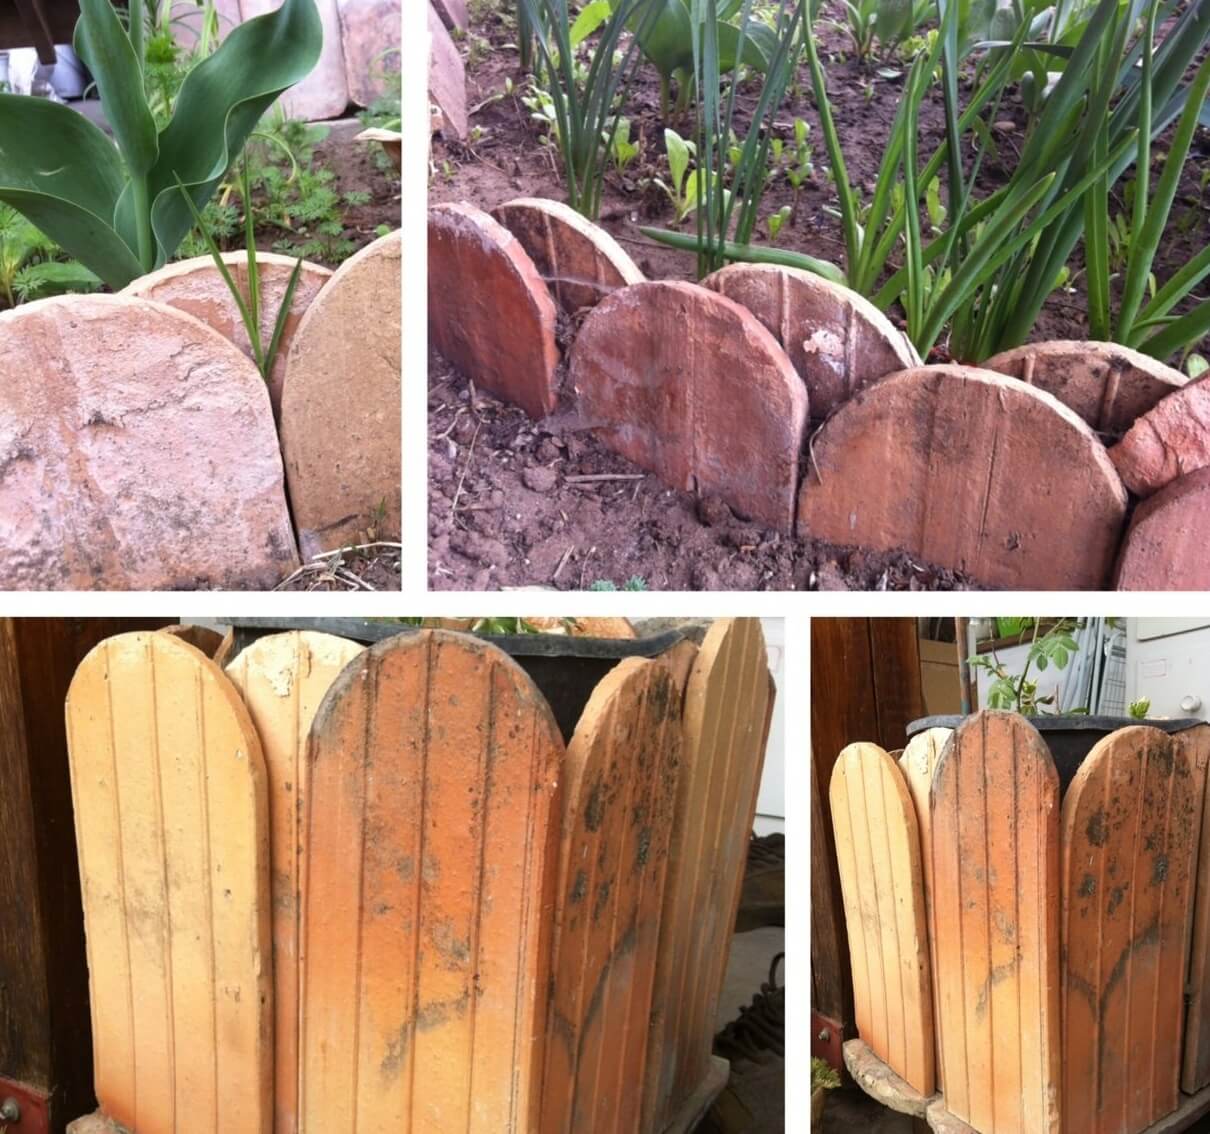 Zahradny-obrubnik-zo-skridle-vyuzitie-starej-krytiny-inspiracia-do-zahrady-recyklovanie-skridiel